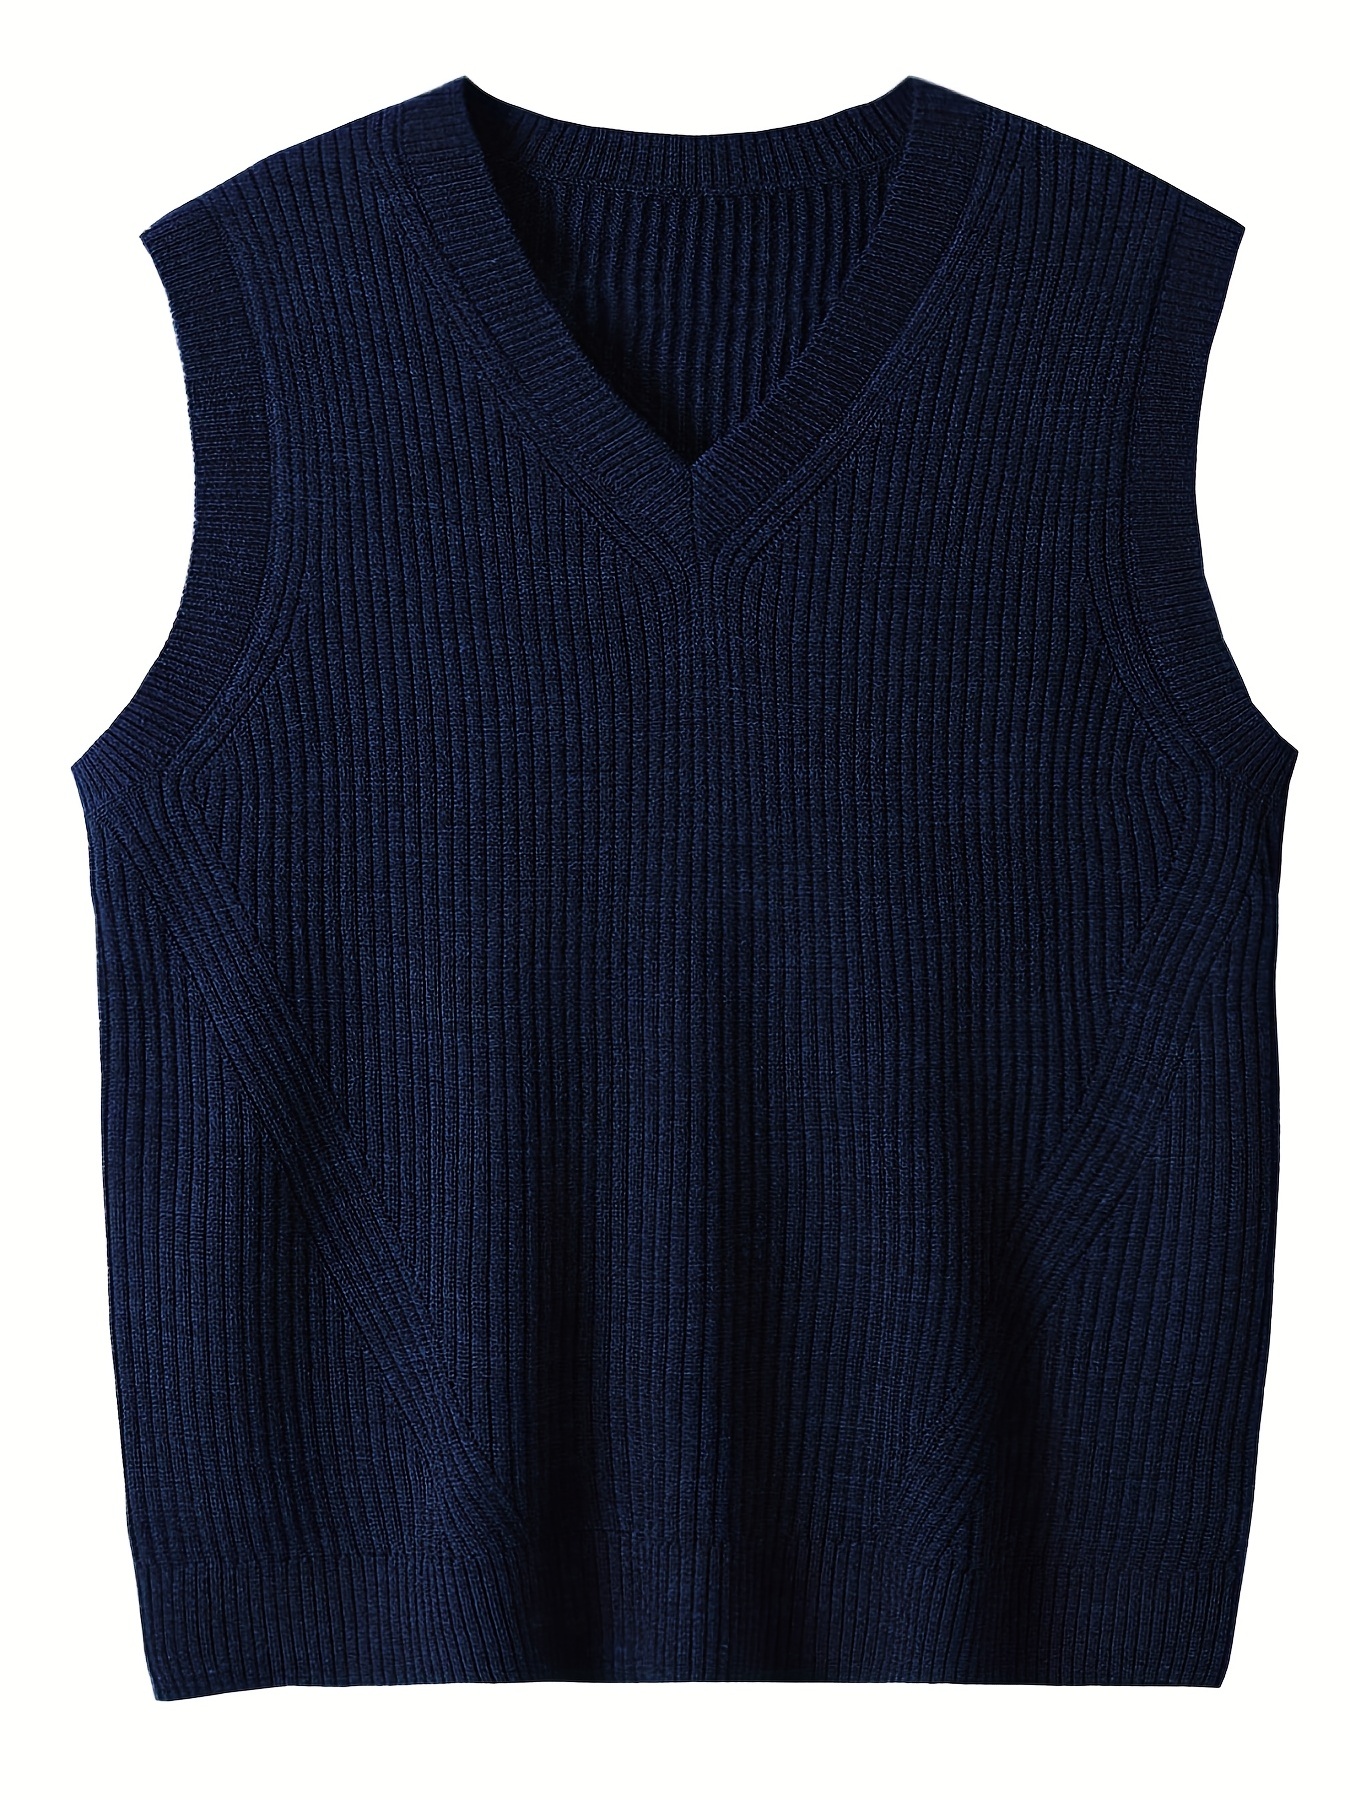 Chaleco Tejido Hombre - Moda Azul Jersey De Punto Suéter Sin Mangas Chaleco  Hombres Cuello En V